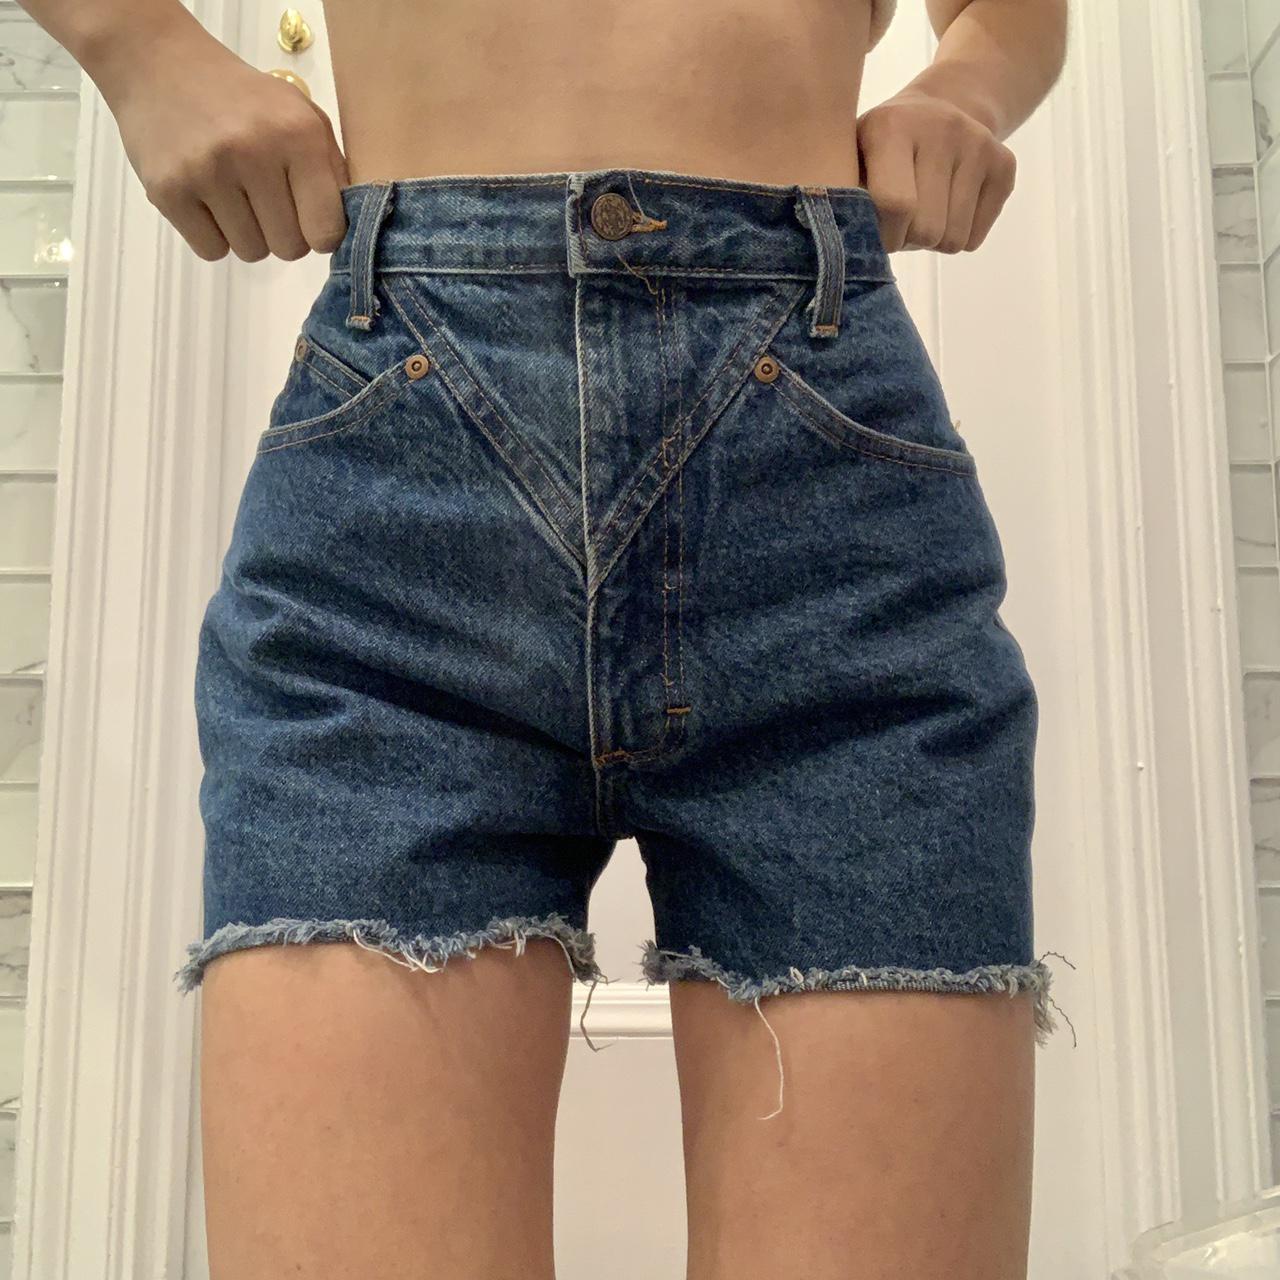 Authentic vintage jean shorts ©1980s. Waist measures... - Depop